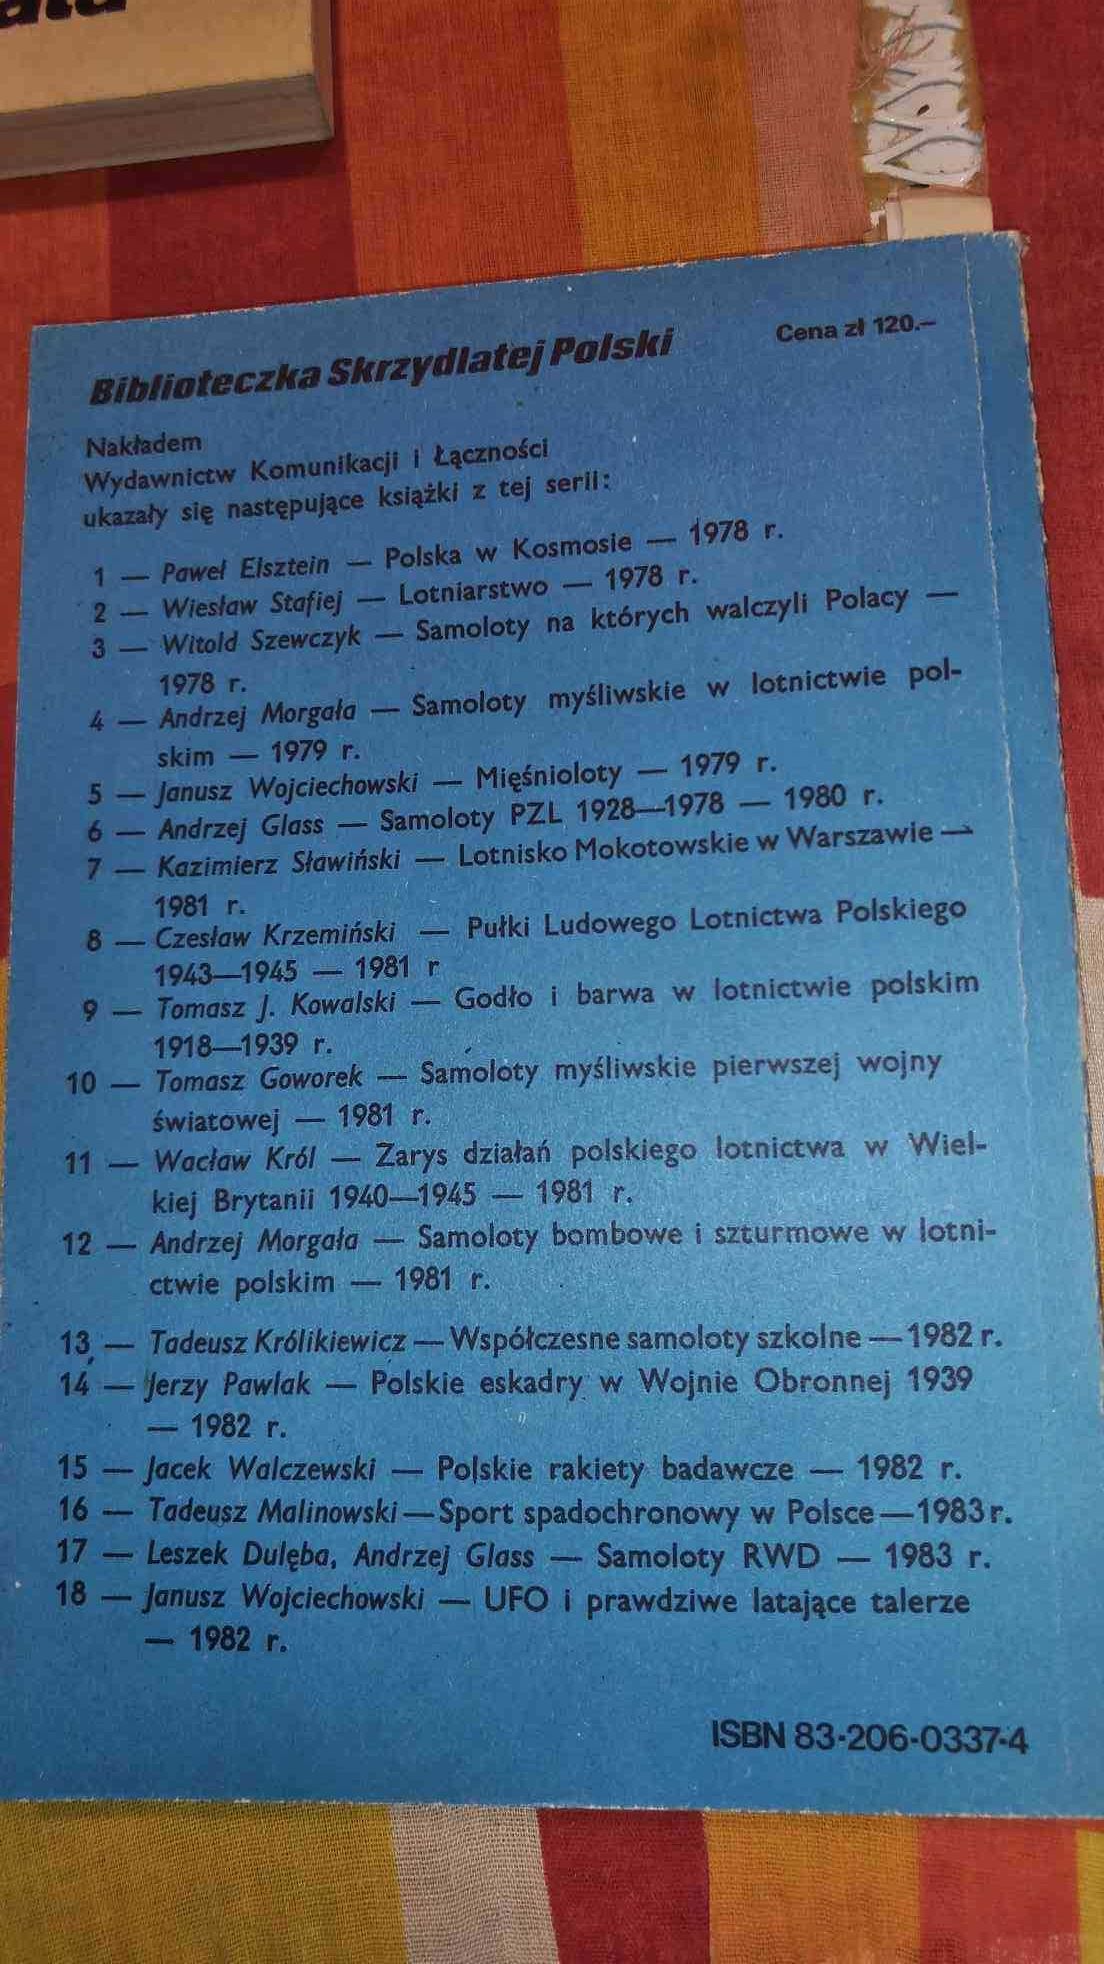 Tadeusz Malinowski
Mała encyklopedia lotników polskich